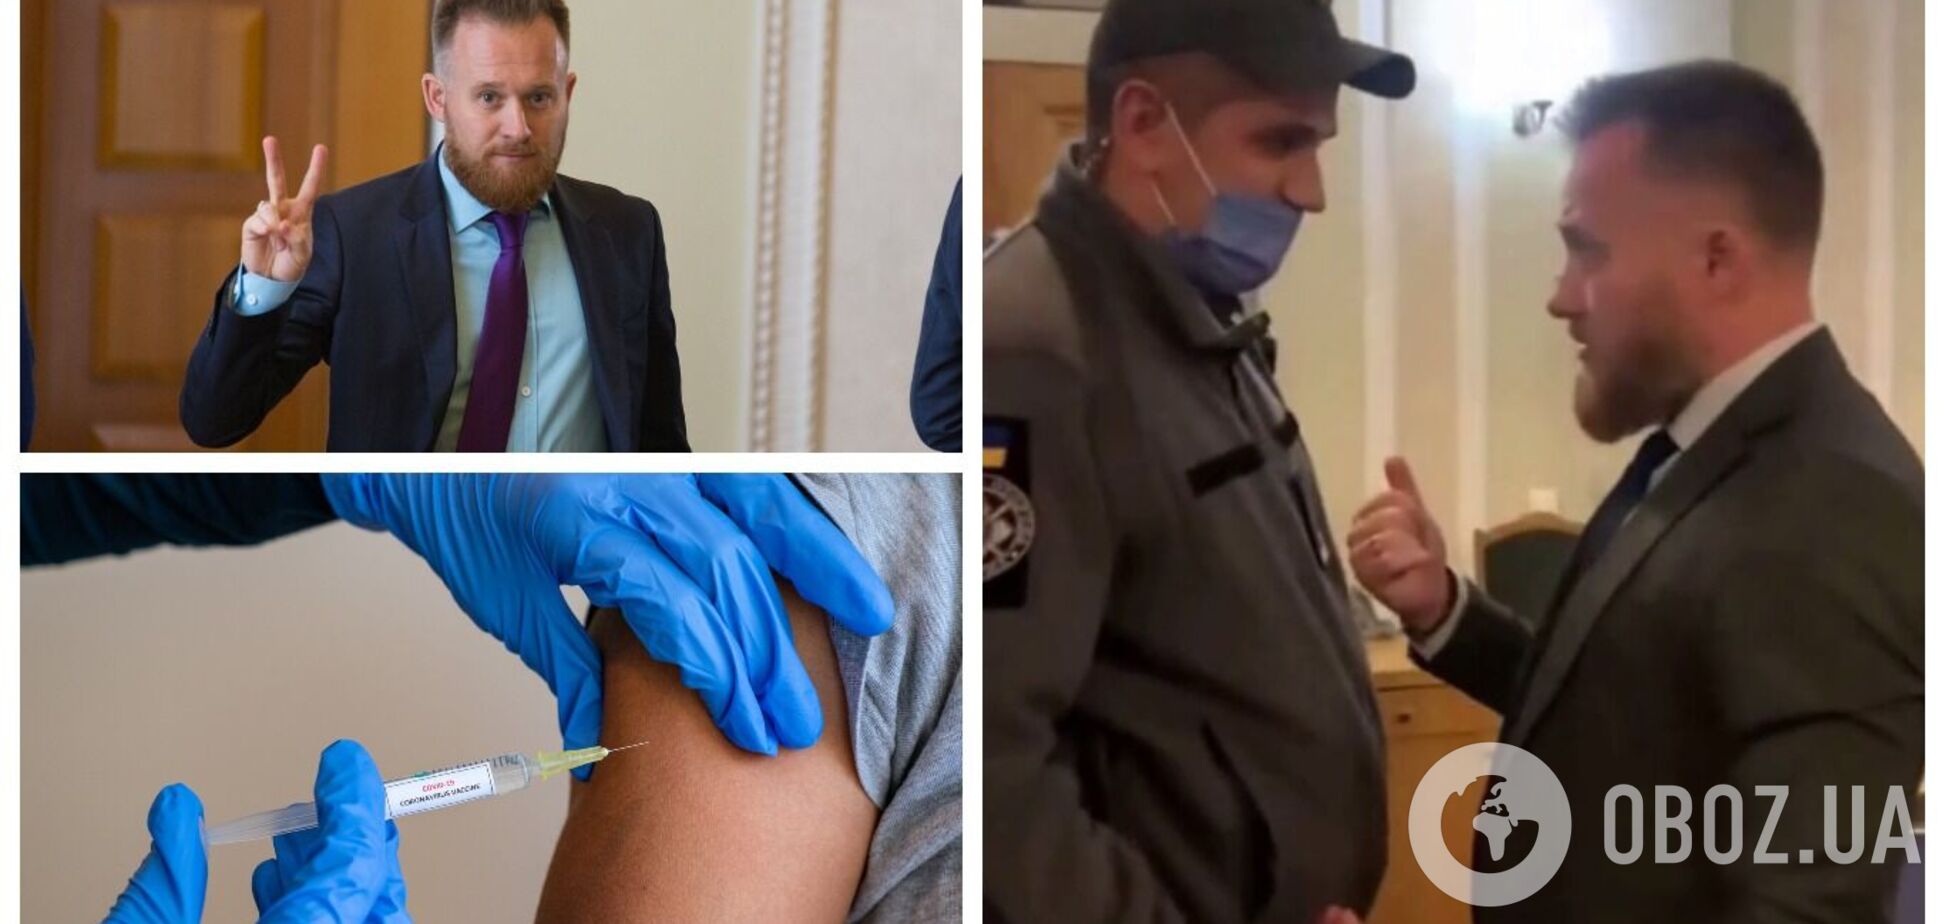 'Слуга' Камельчук, выступивший против вакцинации от COVID-19, устроил перепалку с охранниками в Раде из-за теста. Видео